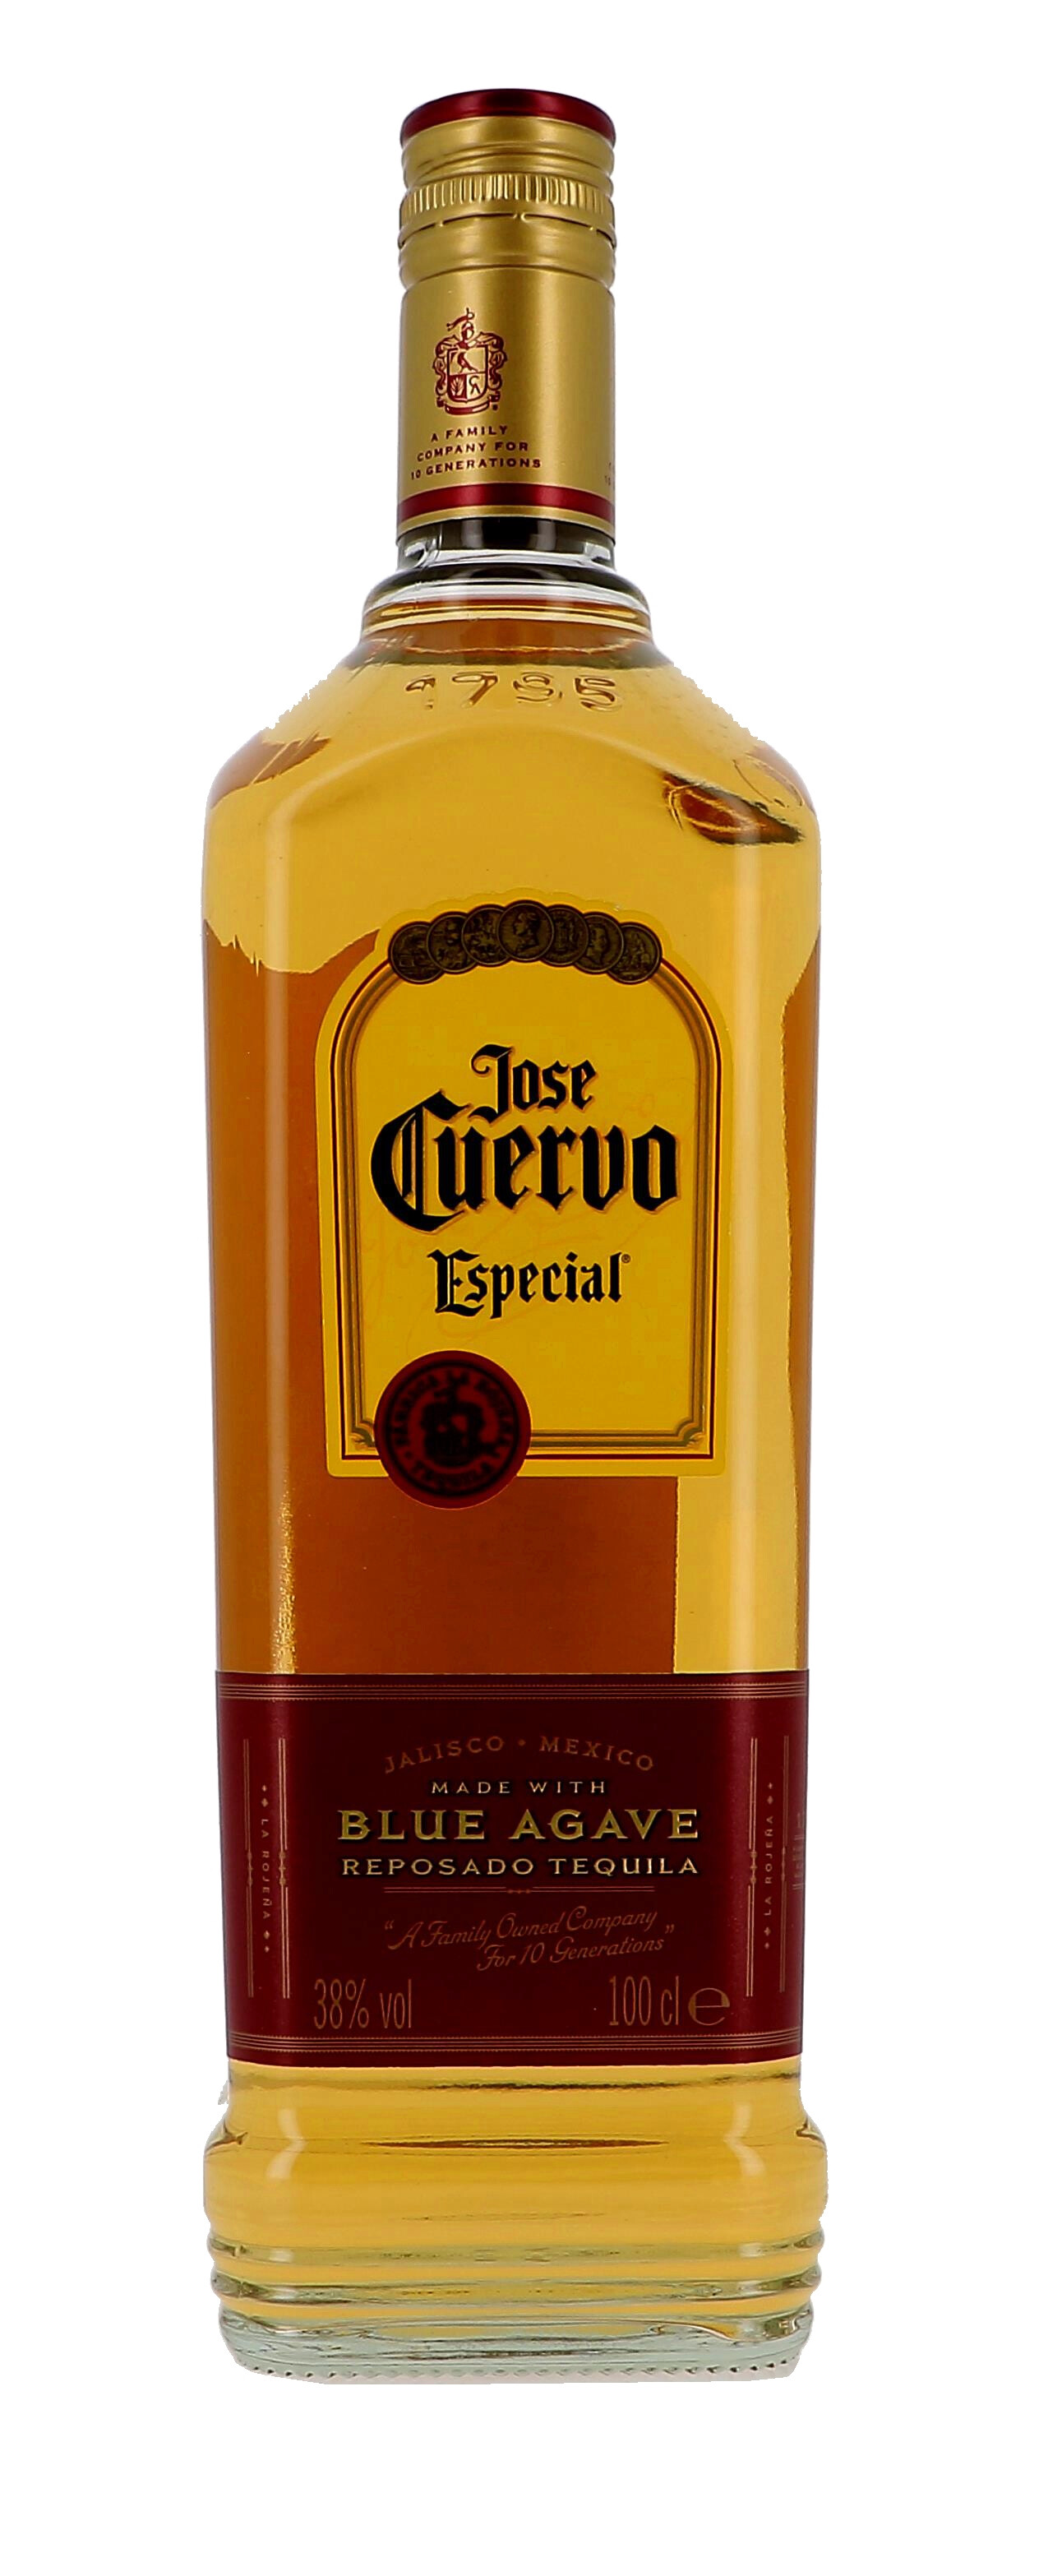 Tequila Jose Cuervo Especial Reposado Blue Agave 1L 38% Jalisco Mexico